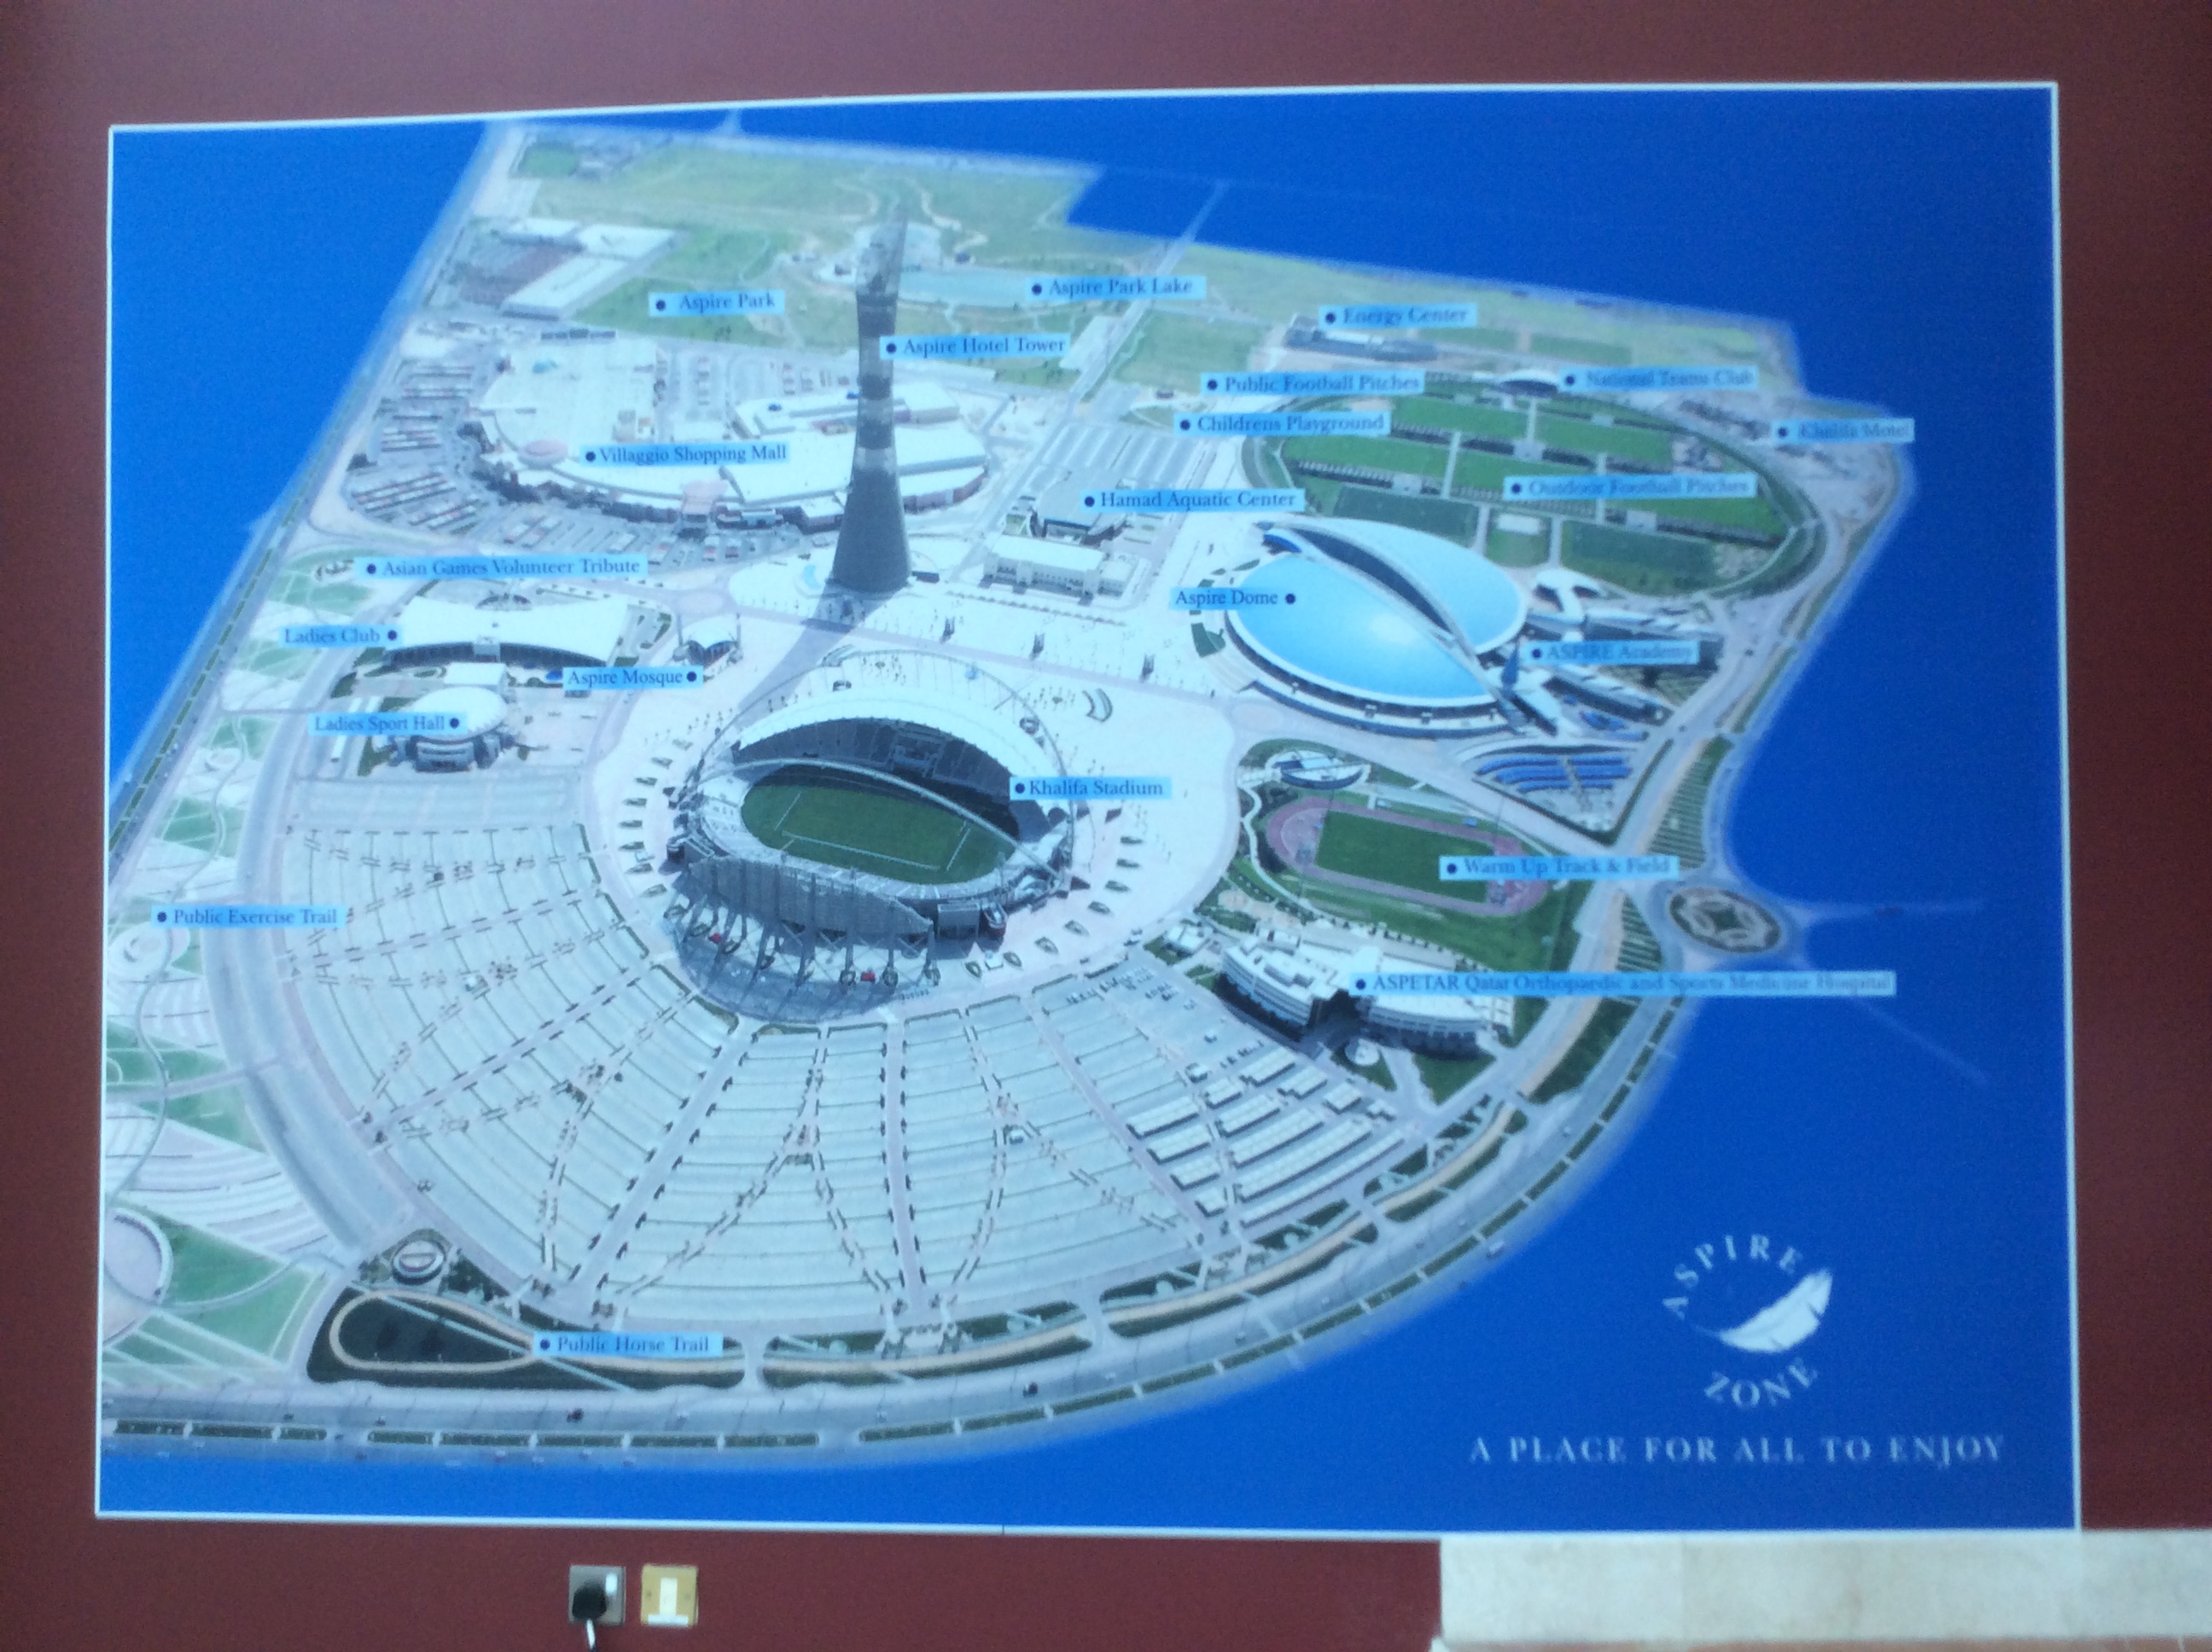 「ASPIRE」の全体図。中央にサッカースタジアムとトーチ（たいまつ）型のホテル。右上に屋外ピッチと室内練習場、左上に公園やショッピングモールが併設されている